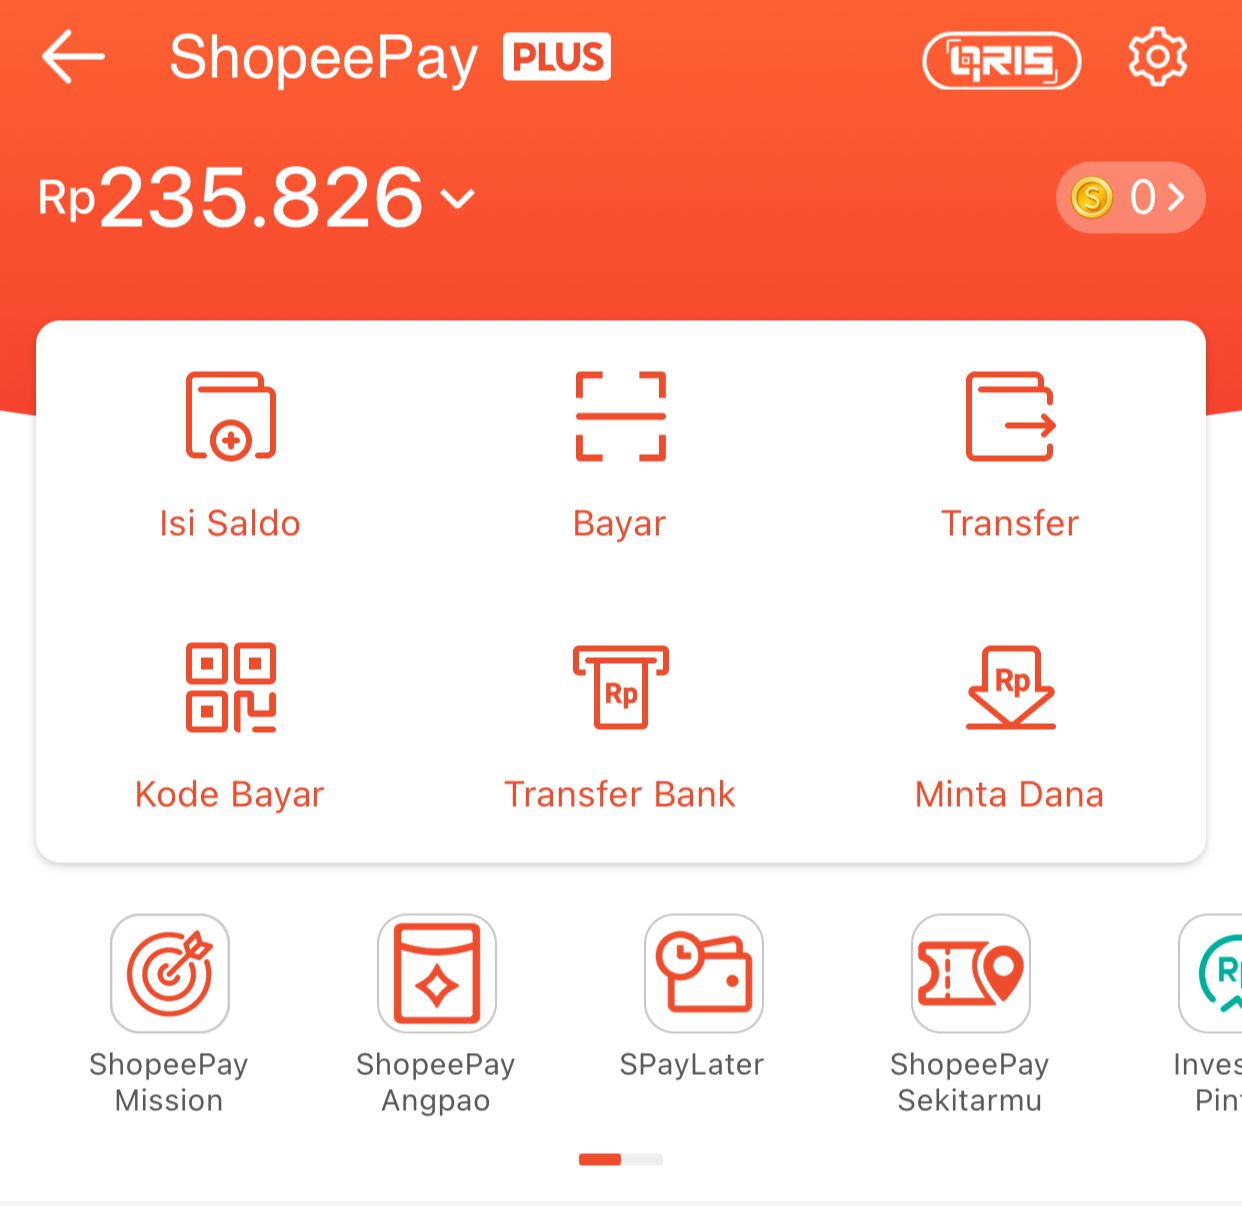 Cari Keuntungan Saldo ShopeePay Gratis Rp 100.000 Di Game Ini!